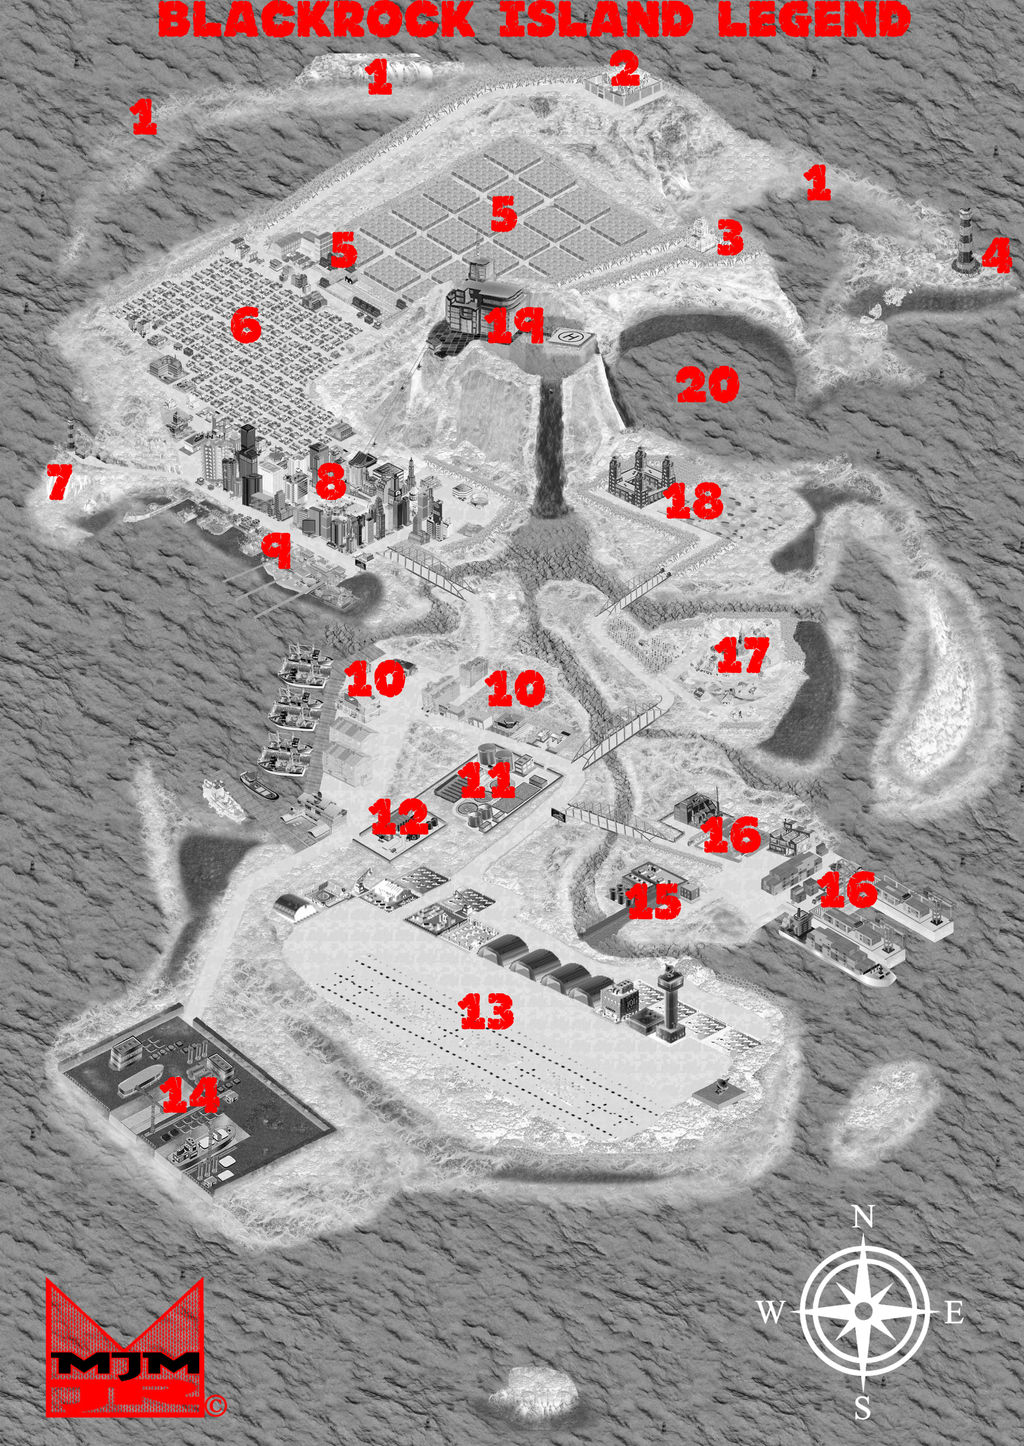 Blackrock Island Map Legend By Wondermanrules Dcpn0pv Fullview ?token=eyJ0eXAiOiJKV1QiLCJhbGciOiJIUzI1NiJ9.eyJzdWIiOiJ1cm46YXBwOjdlMGQxODg5ODIyNjQzNzNhNWYwZDQxNWVhMGQyNmUwIiwiaXNzIjoidXJuOmFwcDo3ZTBkMTg4OTgyMjY0MzczYTVmMGQ0MTVlYTBkMjZlMCIsIm9iaiI6W1t7ImhlaWdodCI6Ijw9MTQ0NiIsInBhdGgiOiJcL2ZcL2ZkMWIzNGRjLWI1MzktNDBjMy05NDYzLWZlMzBiOTYxNTI4NVwvZGNwbjBwdi0zOGM2YTkwYS1hMmM3LTRlMDMtYWRiNS0xNjg5YjQ3MTZkMjQucG5nIiwid2lkdGgiOiI8PTEwMjQifV1dLCJhdWQiOlsidXJuOnNlcnZpY2U6aW1hZ2Uub3BlcmF0aW9ucyJdfQ.HBUjp3G7lMLPriO SQf DVk EFnIhmWKbD7Bua0O5Fw